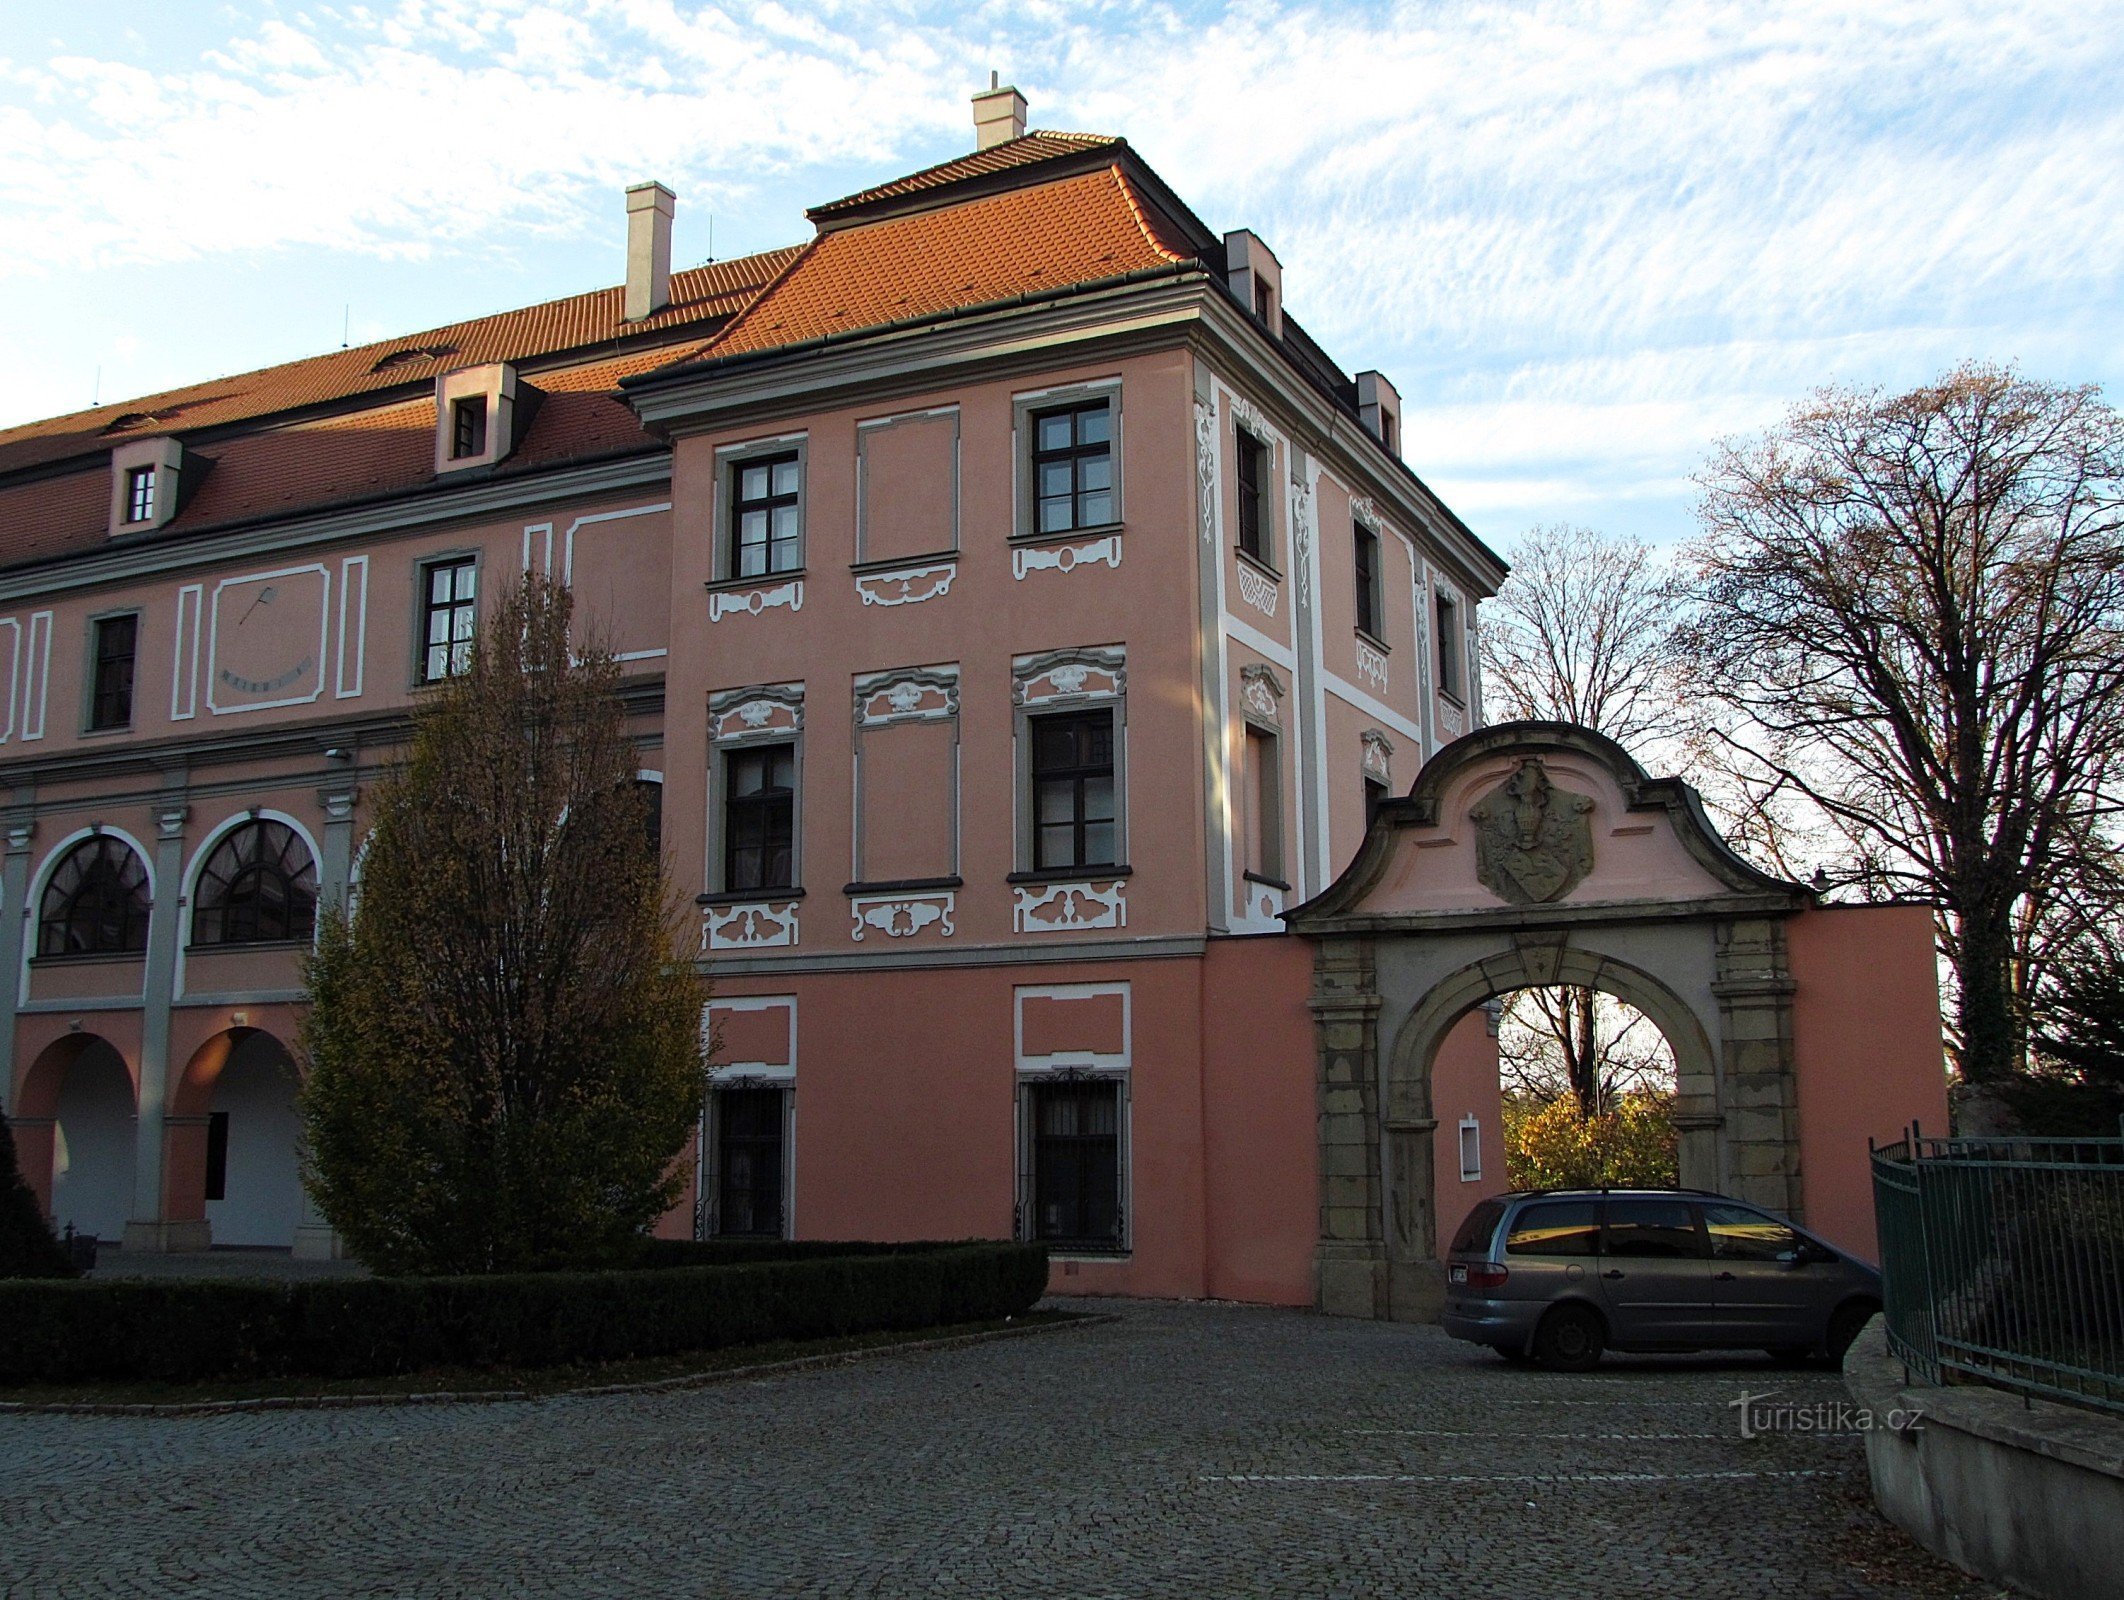 Valašské Meziříčí - Castelul Žerotín în centrul orașului